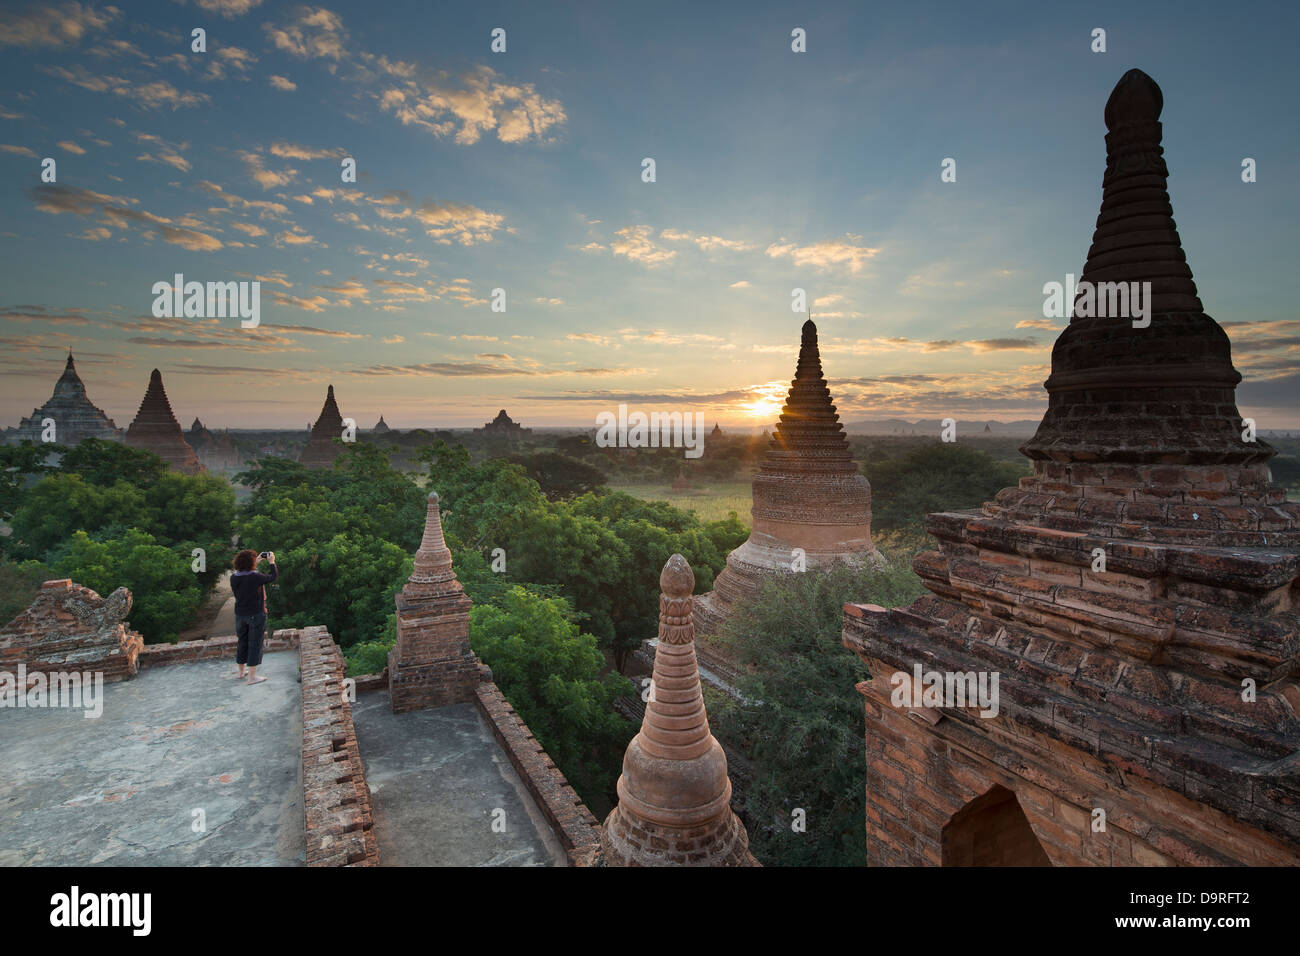 Wendy de prendre une photo des temples de Bagan au lever du soleil, le Myanmar (Birmanie) Banque D'Images